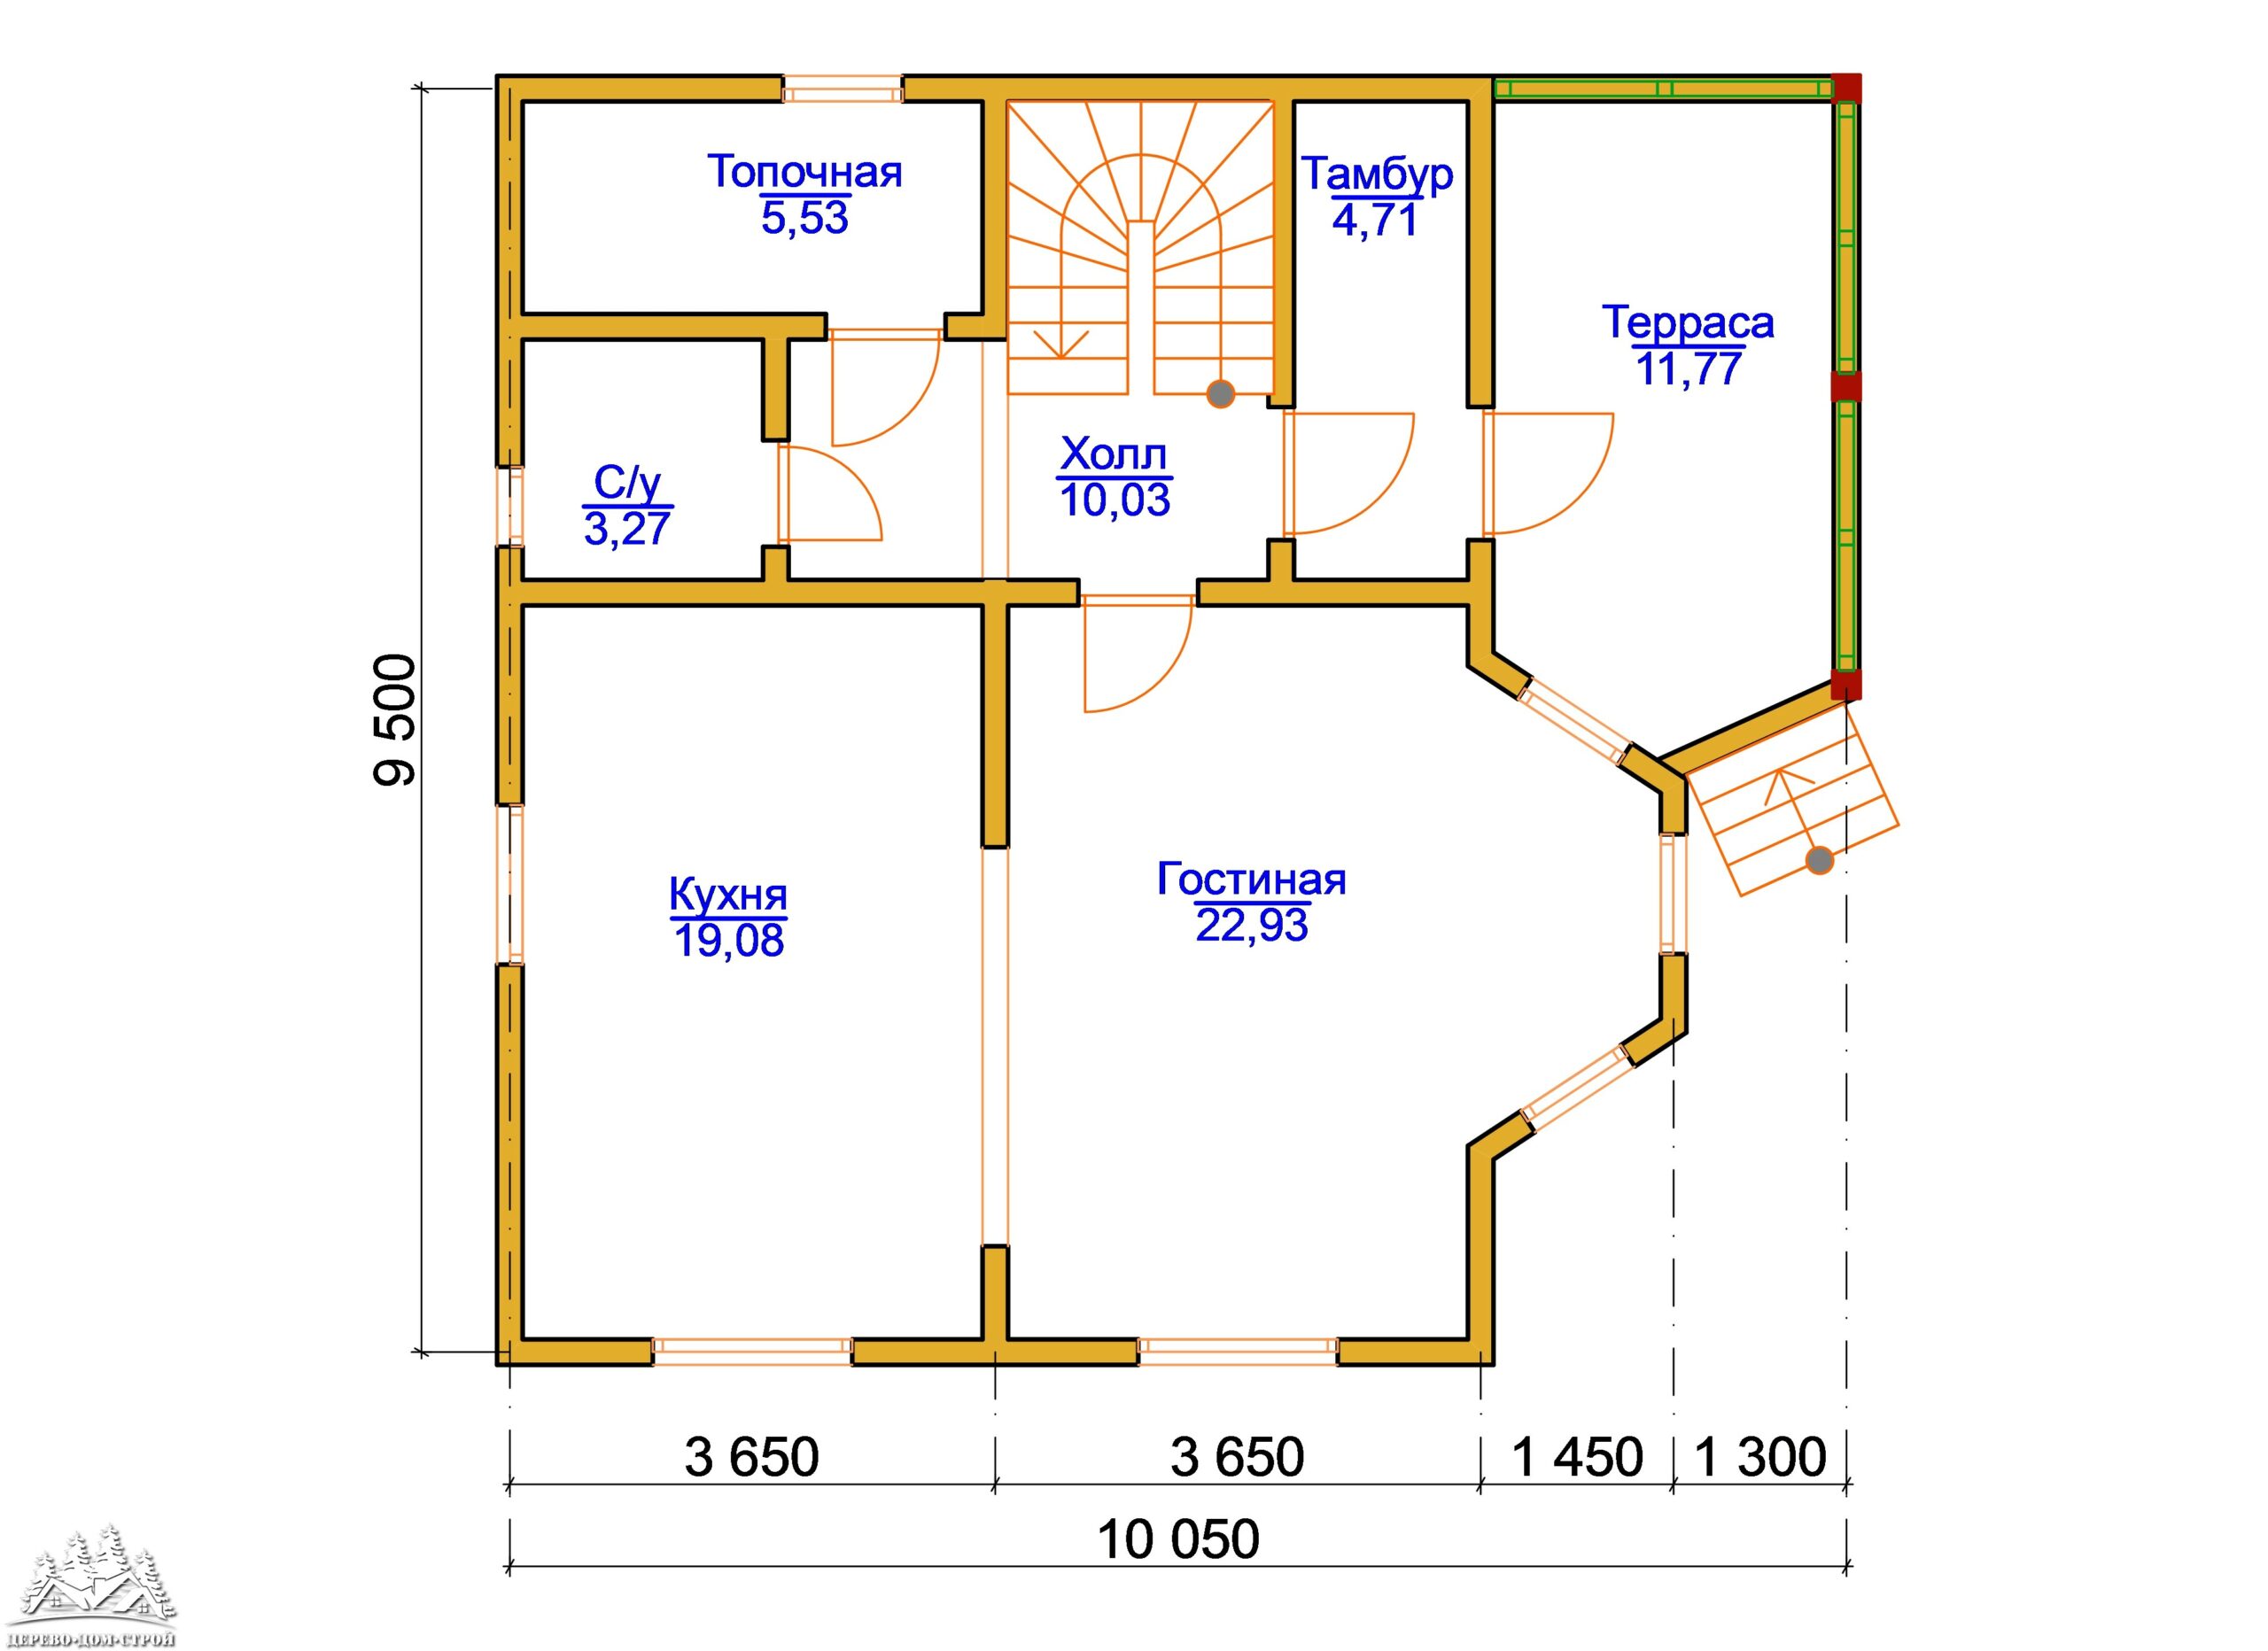 Проект одноэтажного деревянного  дома с мансардой и террасой  из бруса – ДБС 409